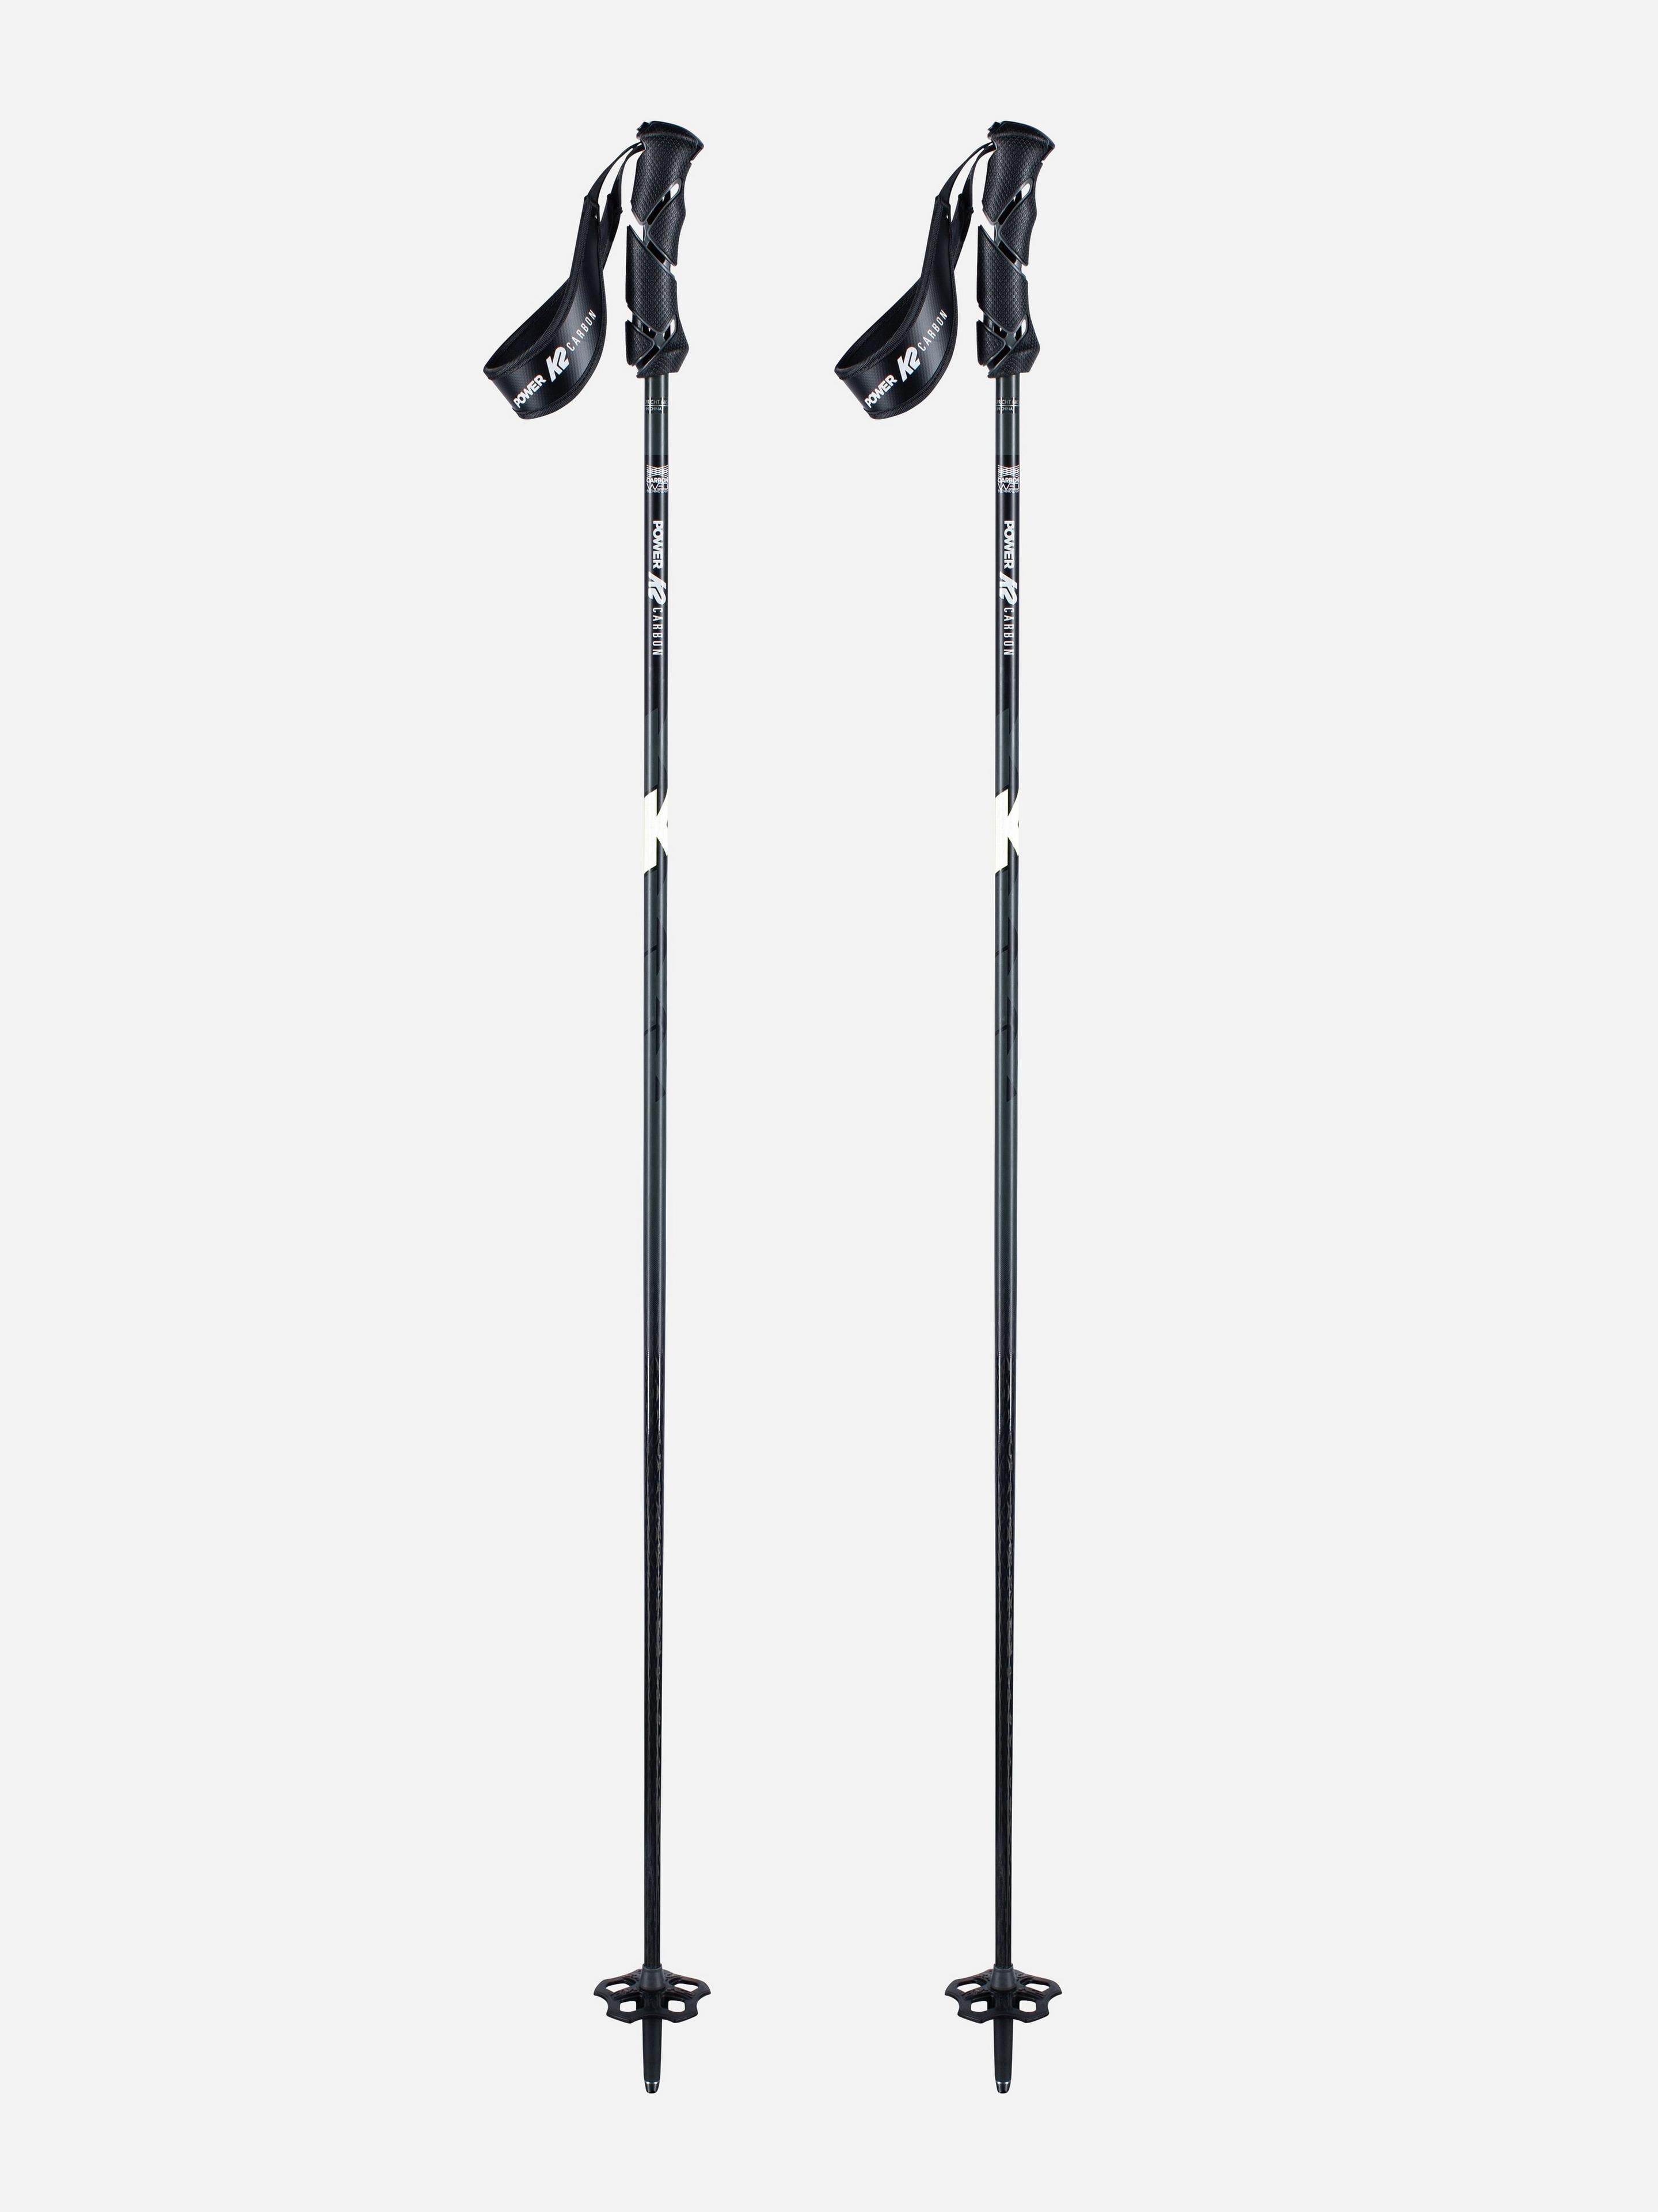 K2 2019 Power Carbon Adult White Ski Poles